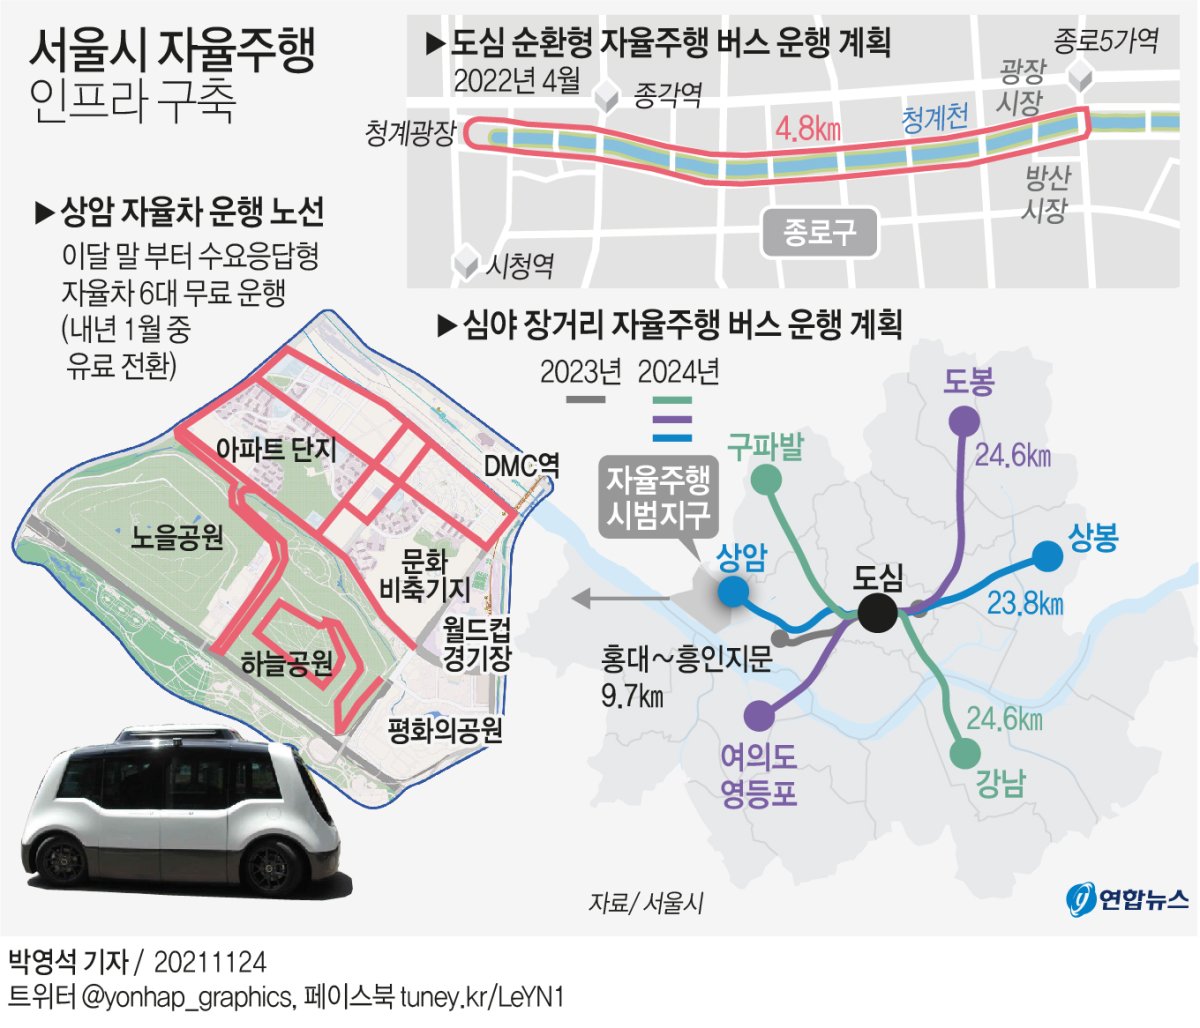 [그래픽] 서울시 자율주행 인프라 구축